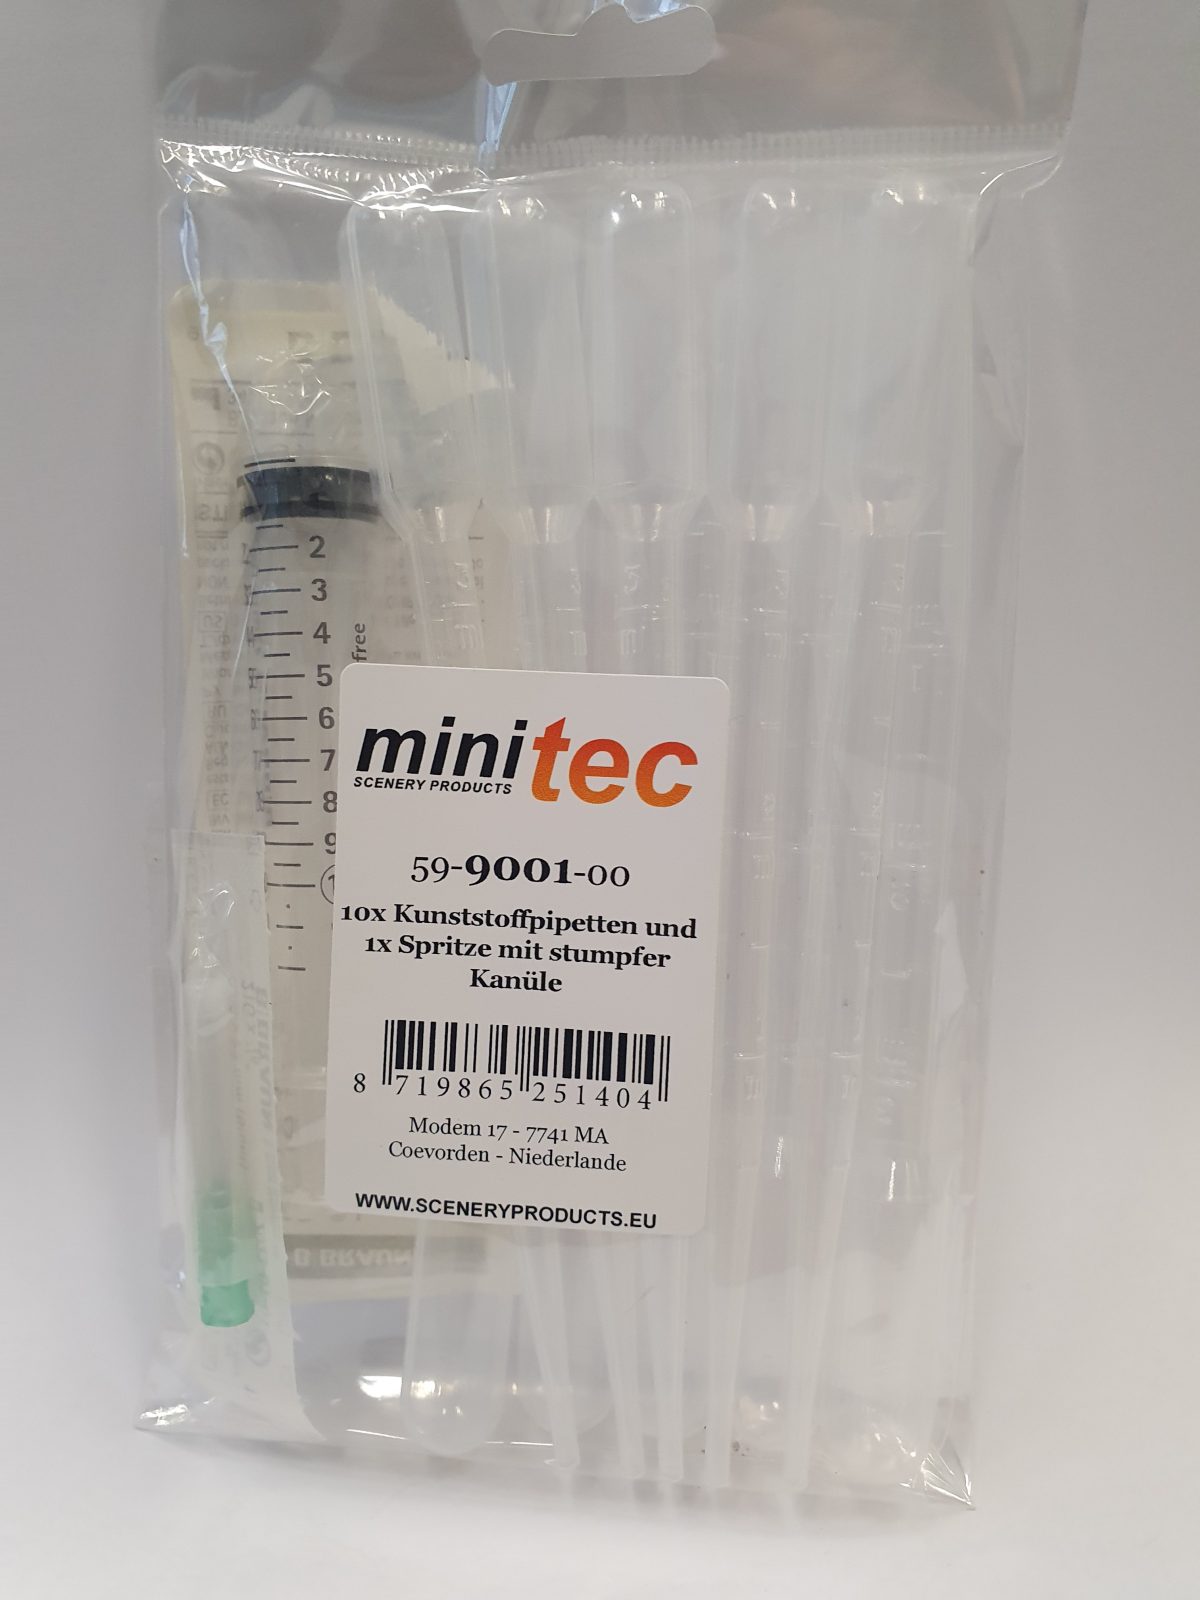 MiniTec 59 9001 00 Kunststoffpipetten 10x und Spritze mit stumpfer Kanuele 1x